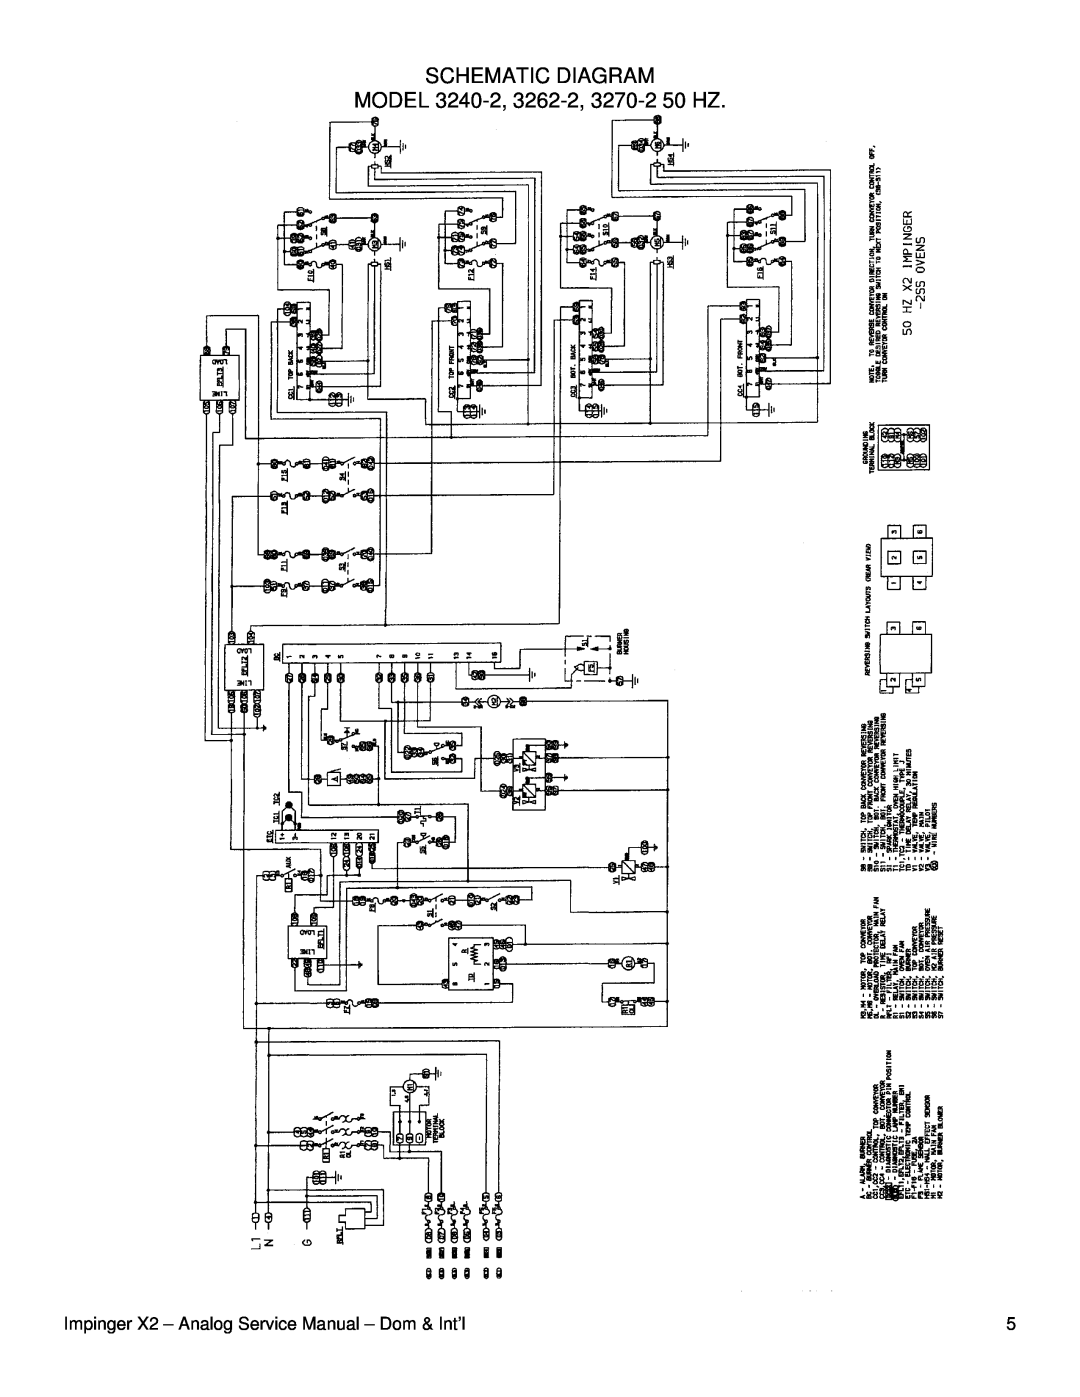 Lincoln service manual MODEL 3240-2, 3262-2, 3270-250 HZ, Schematic Diagram 